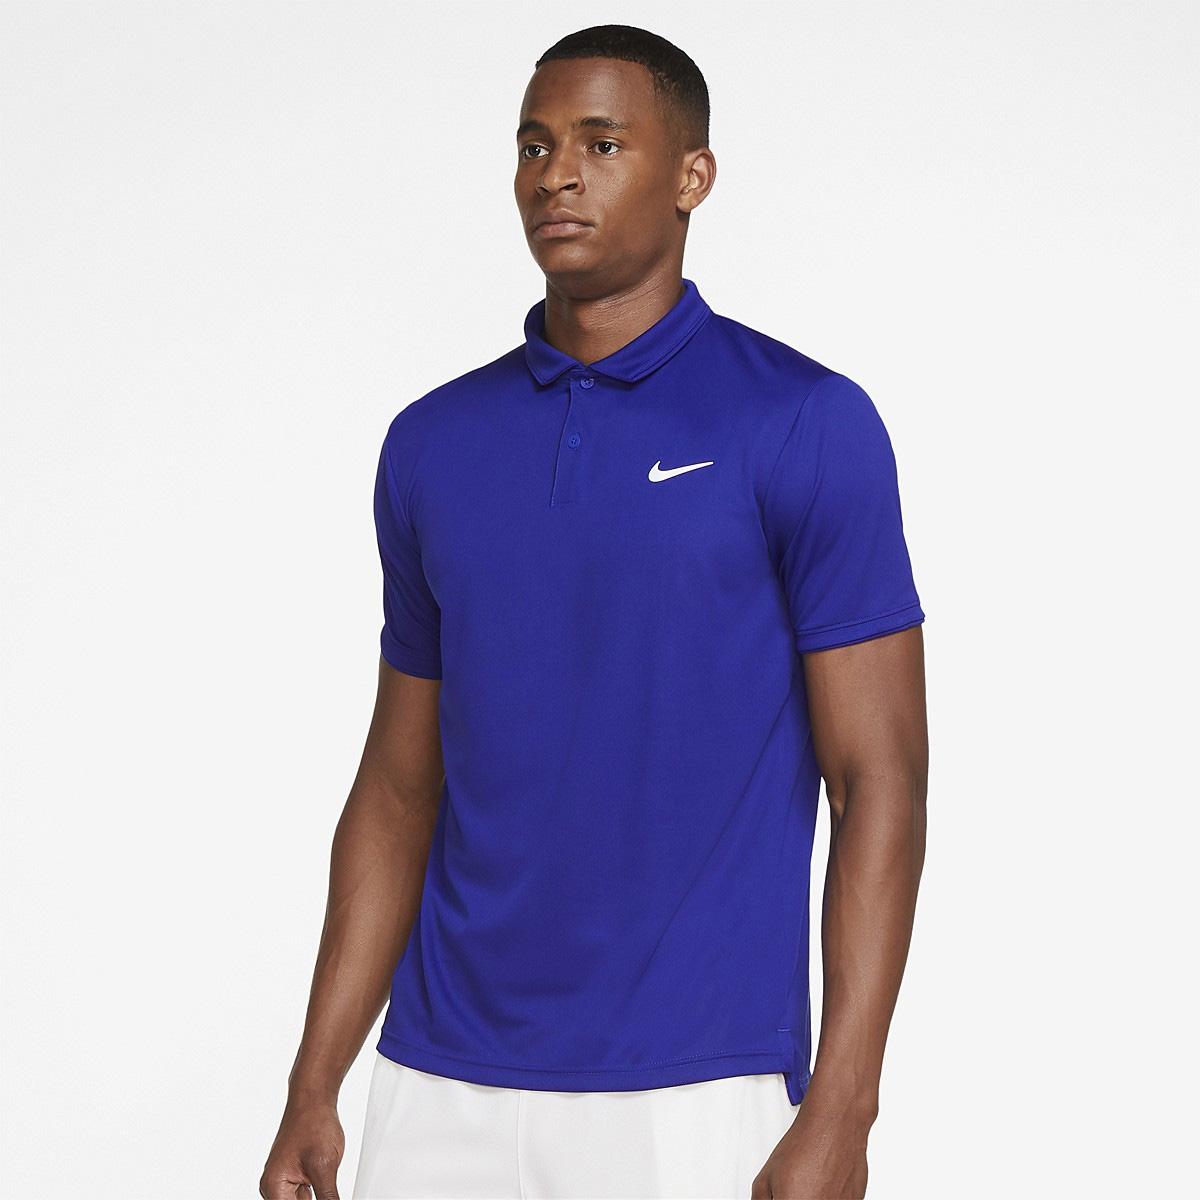 Nike Mens Victory Tennis Polo - Concord - Tennisnuts.com